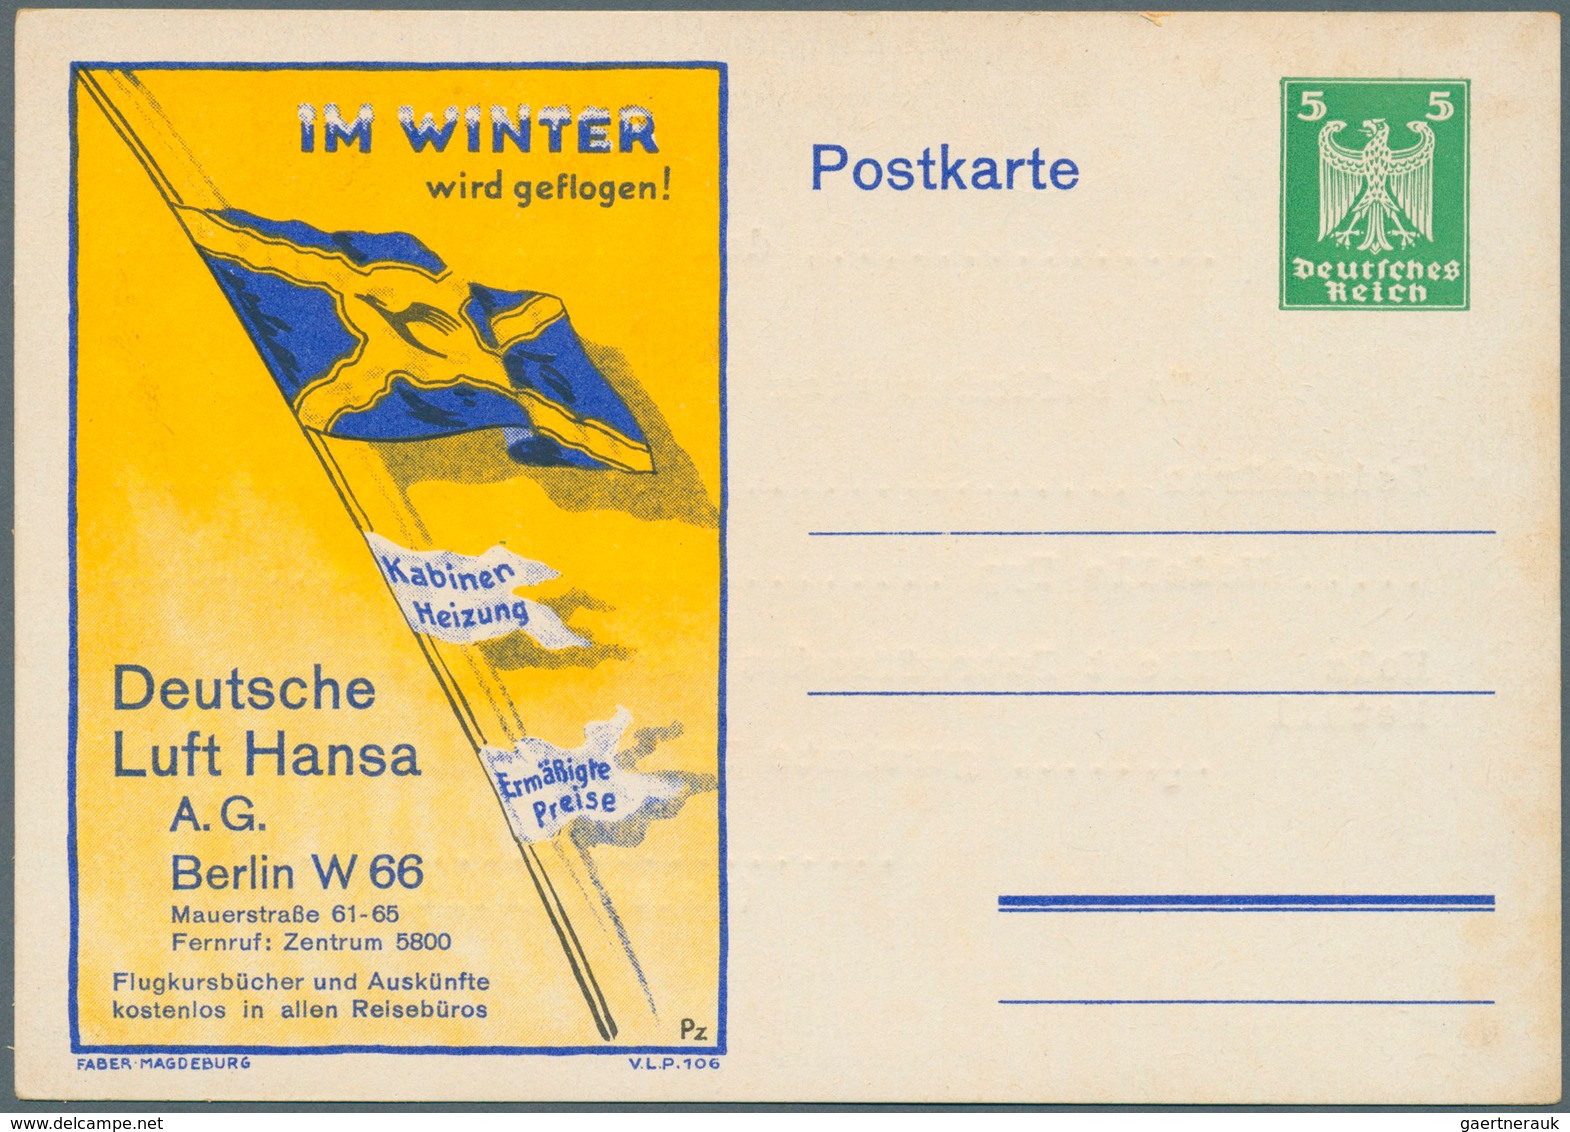 31778 Deutsches Reich - Ganzsachen: 1921/1925, Posten von 572 Privat-Postkarten aus PP 50 bis PP 81, ungeb